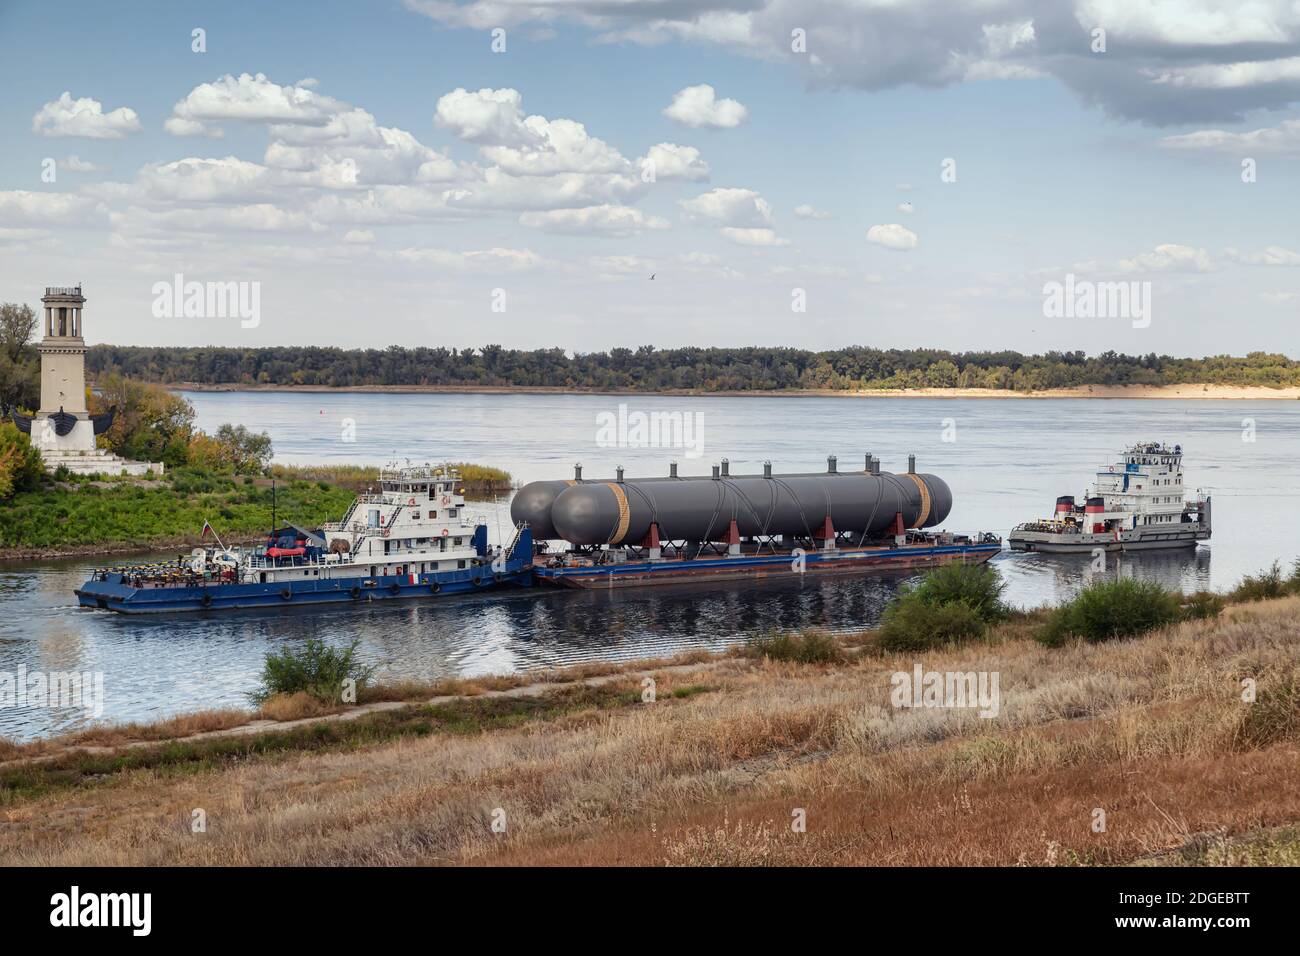 Trasporto di grandi serbatoi per le imprese petrolchimiche sul fiume con aiuto di due rimorchiatori Foto Stock